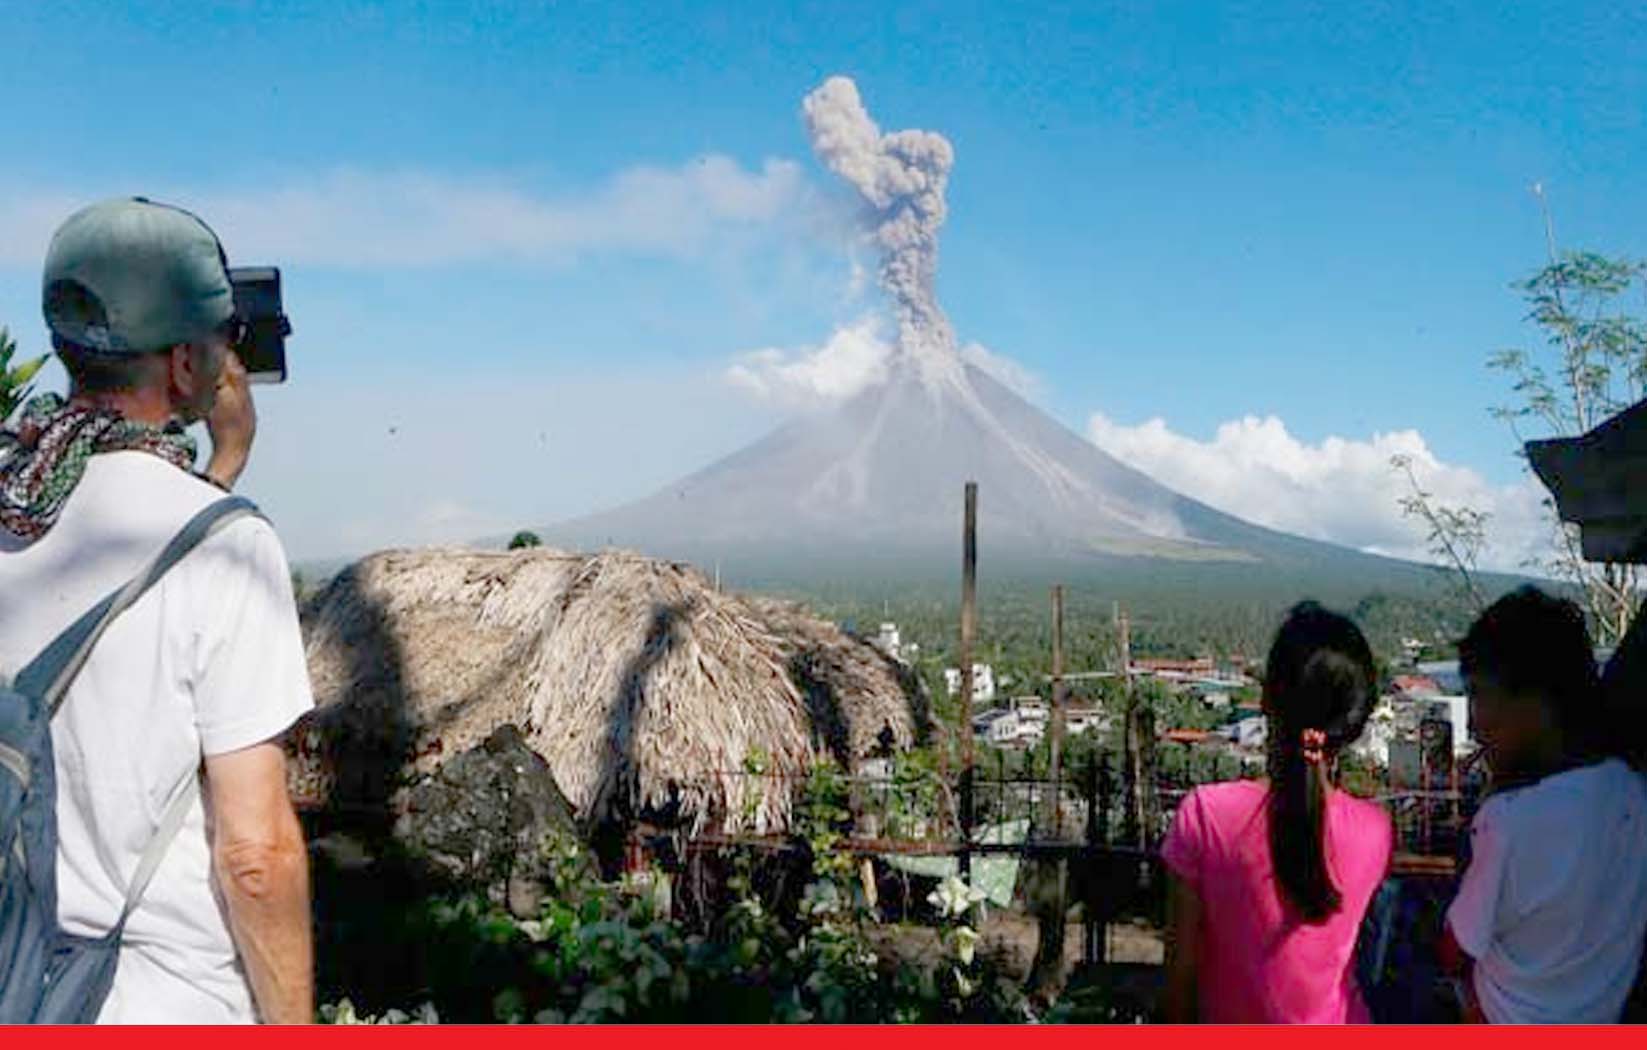 आप एक रोमांचक यात्रा के लिए इन 5 ज्वालामुखी पर जा सकते हैं 